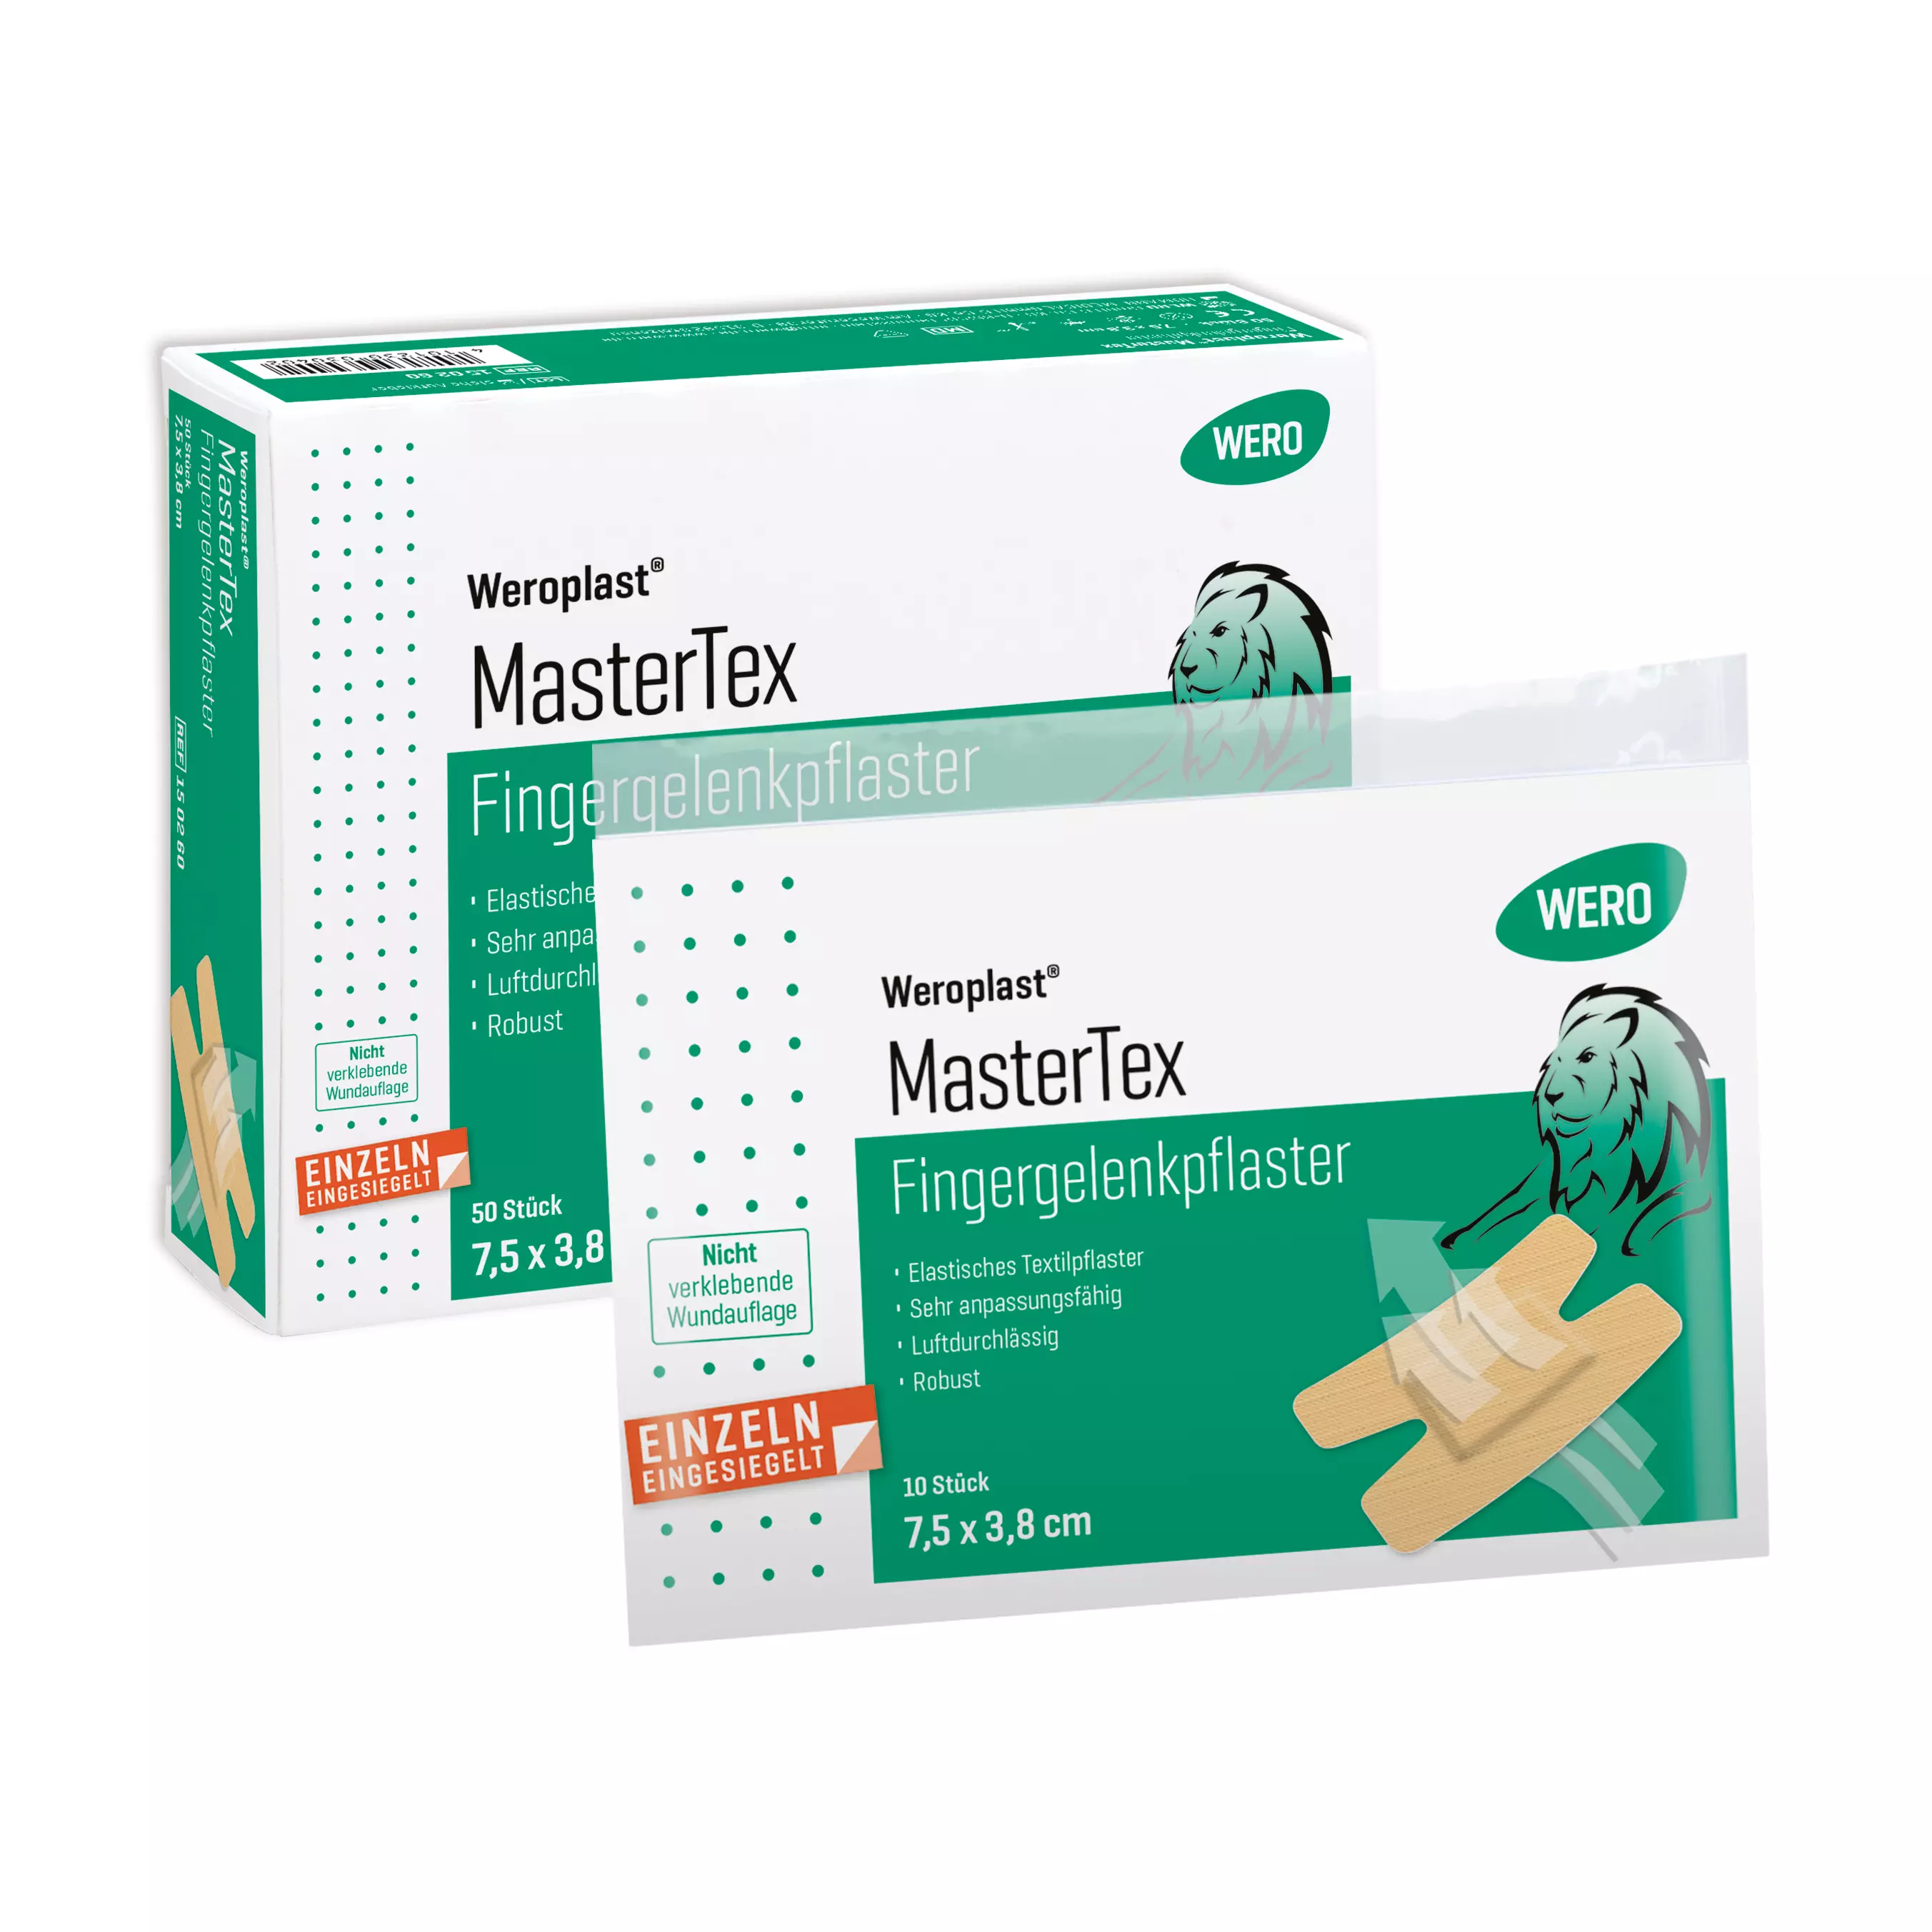 Fingergelenkpflaster Weroplast® MasterTex - 10 Stk